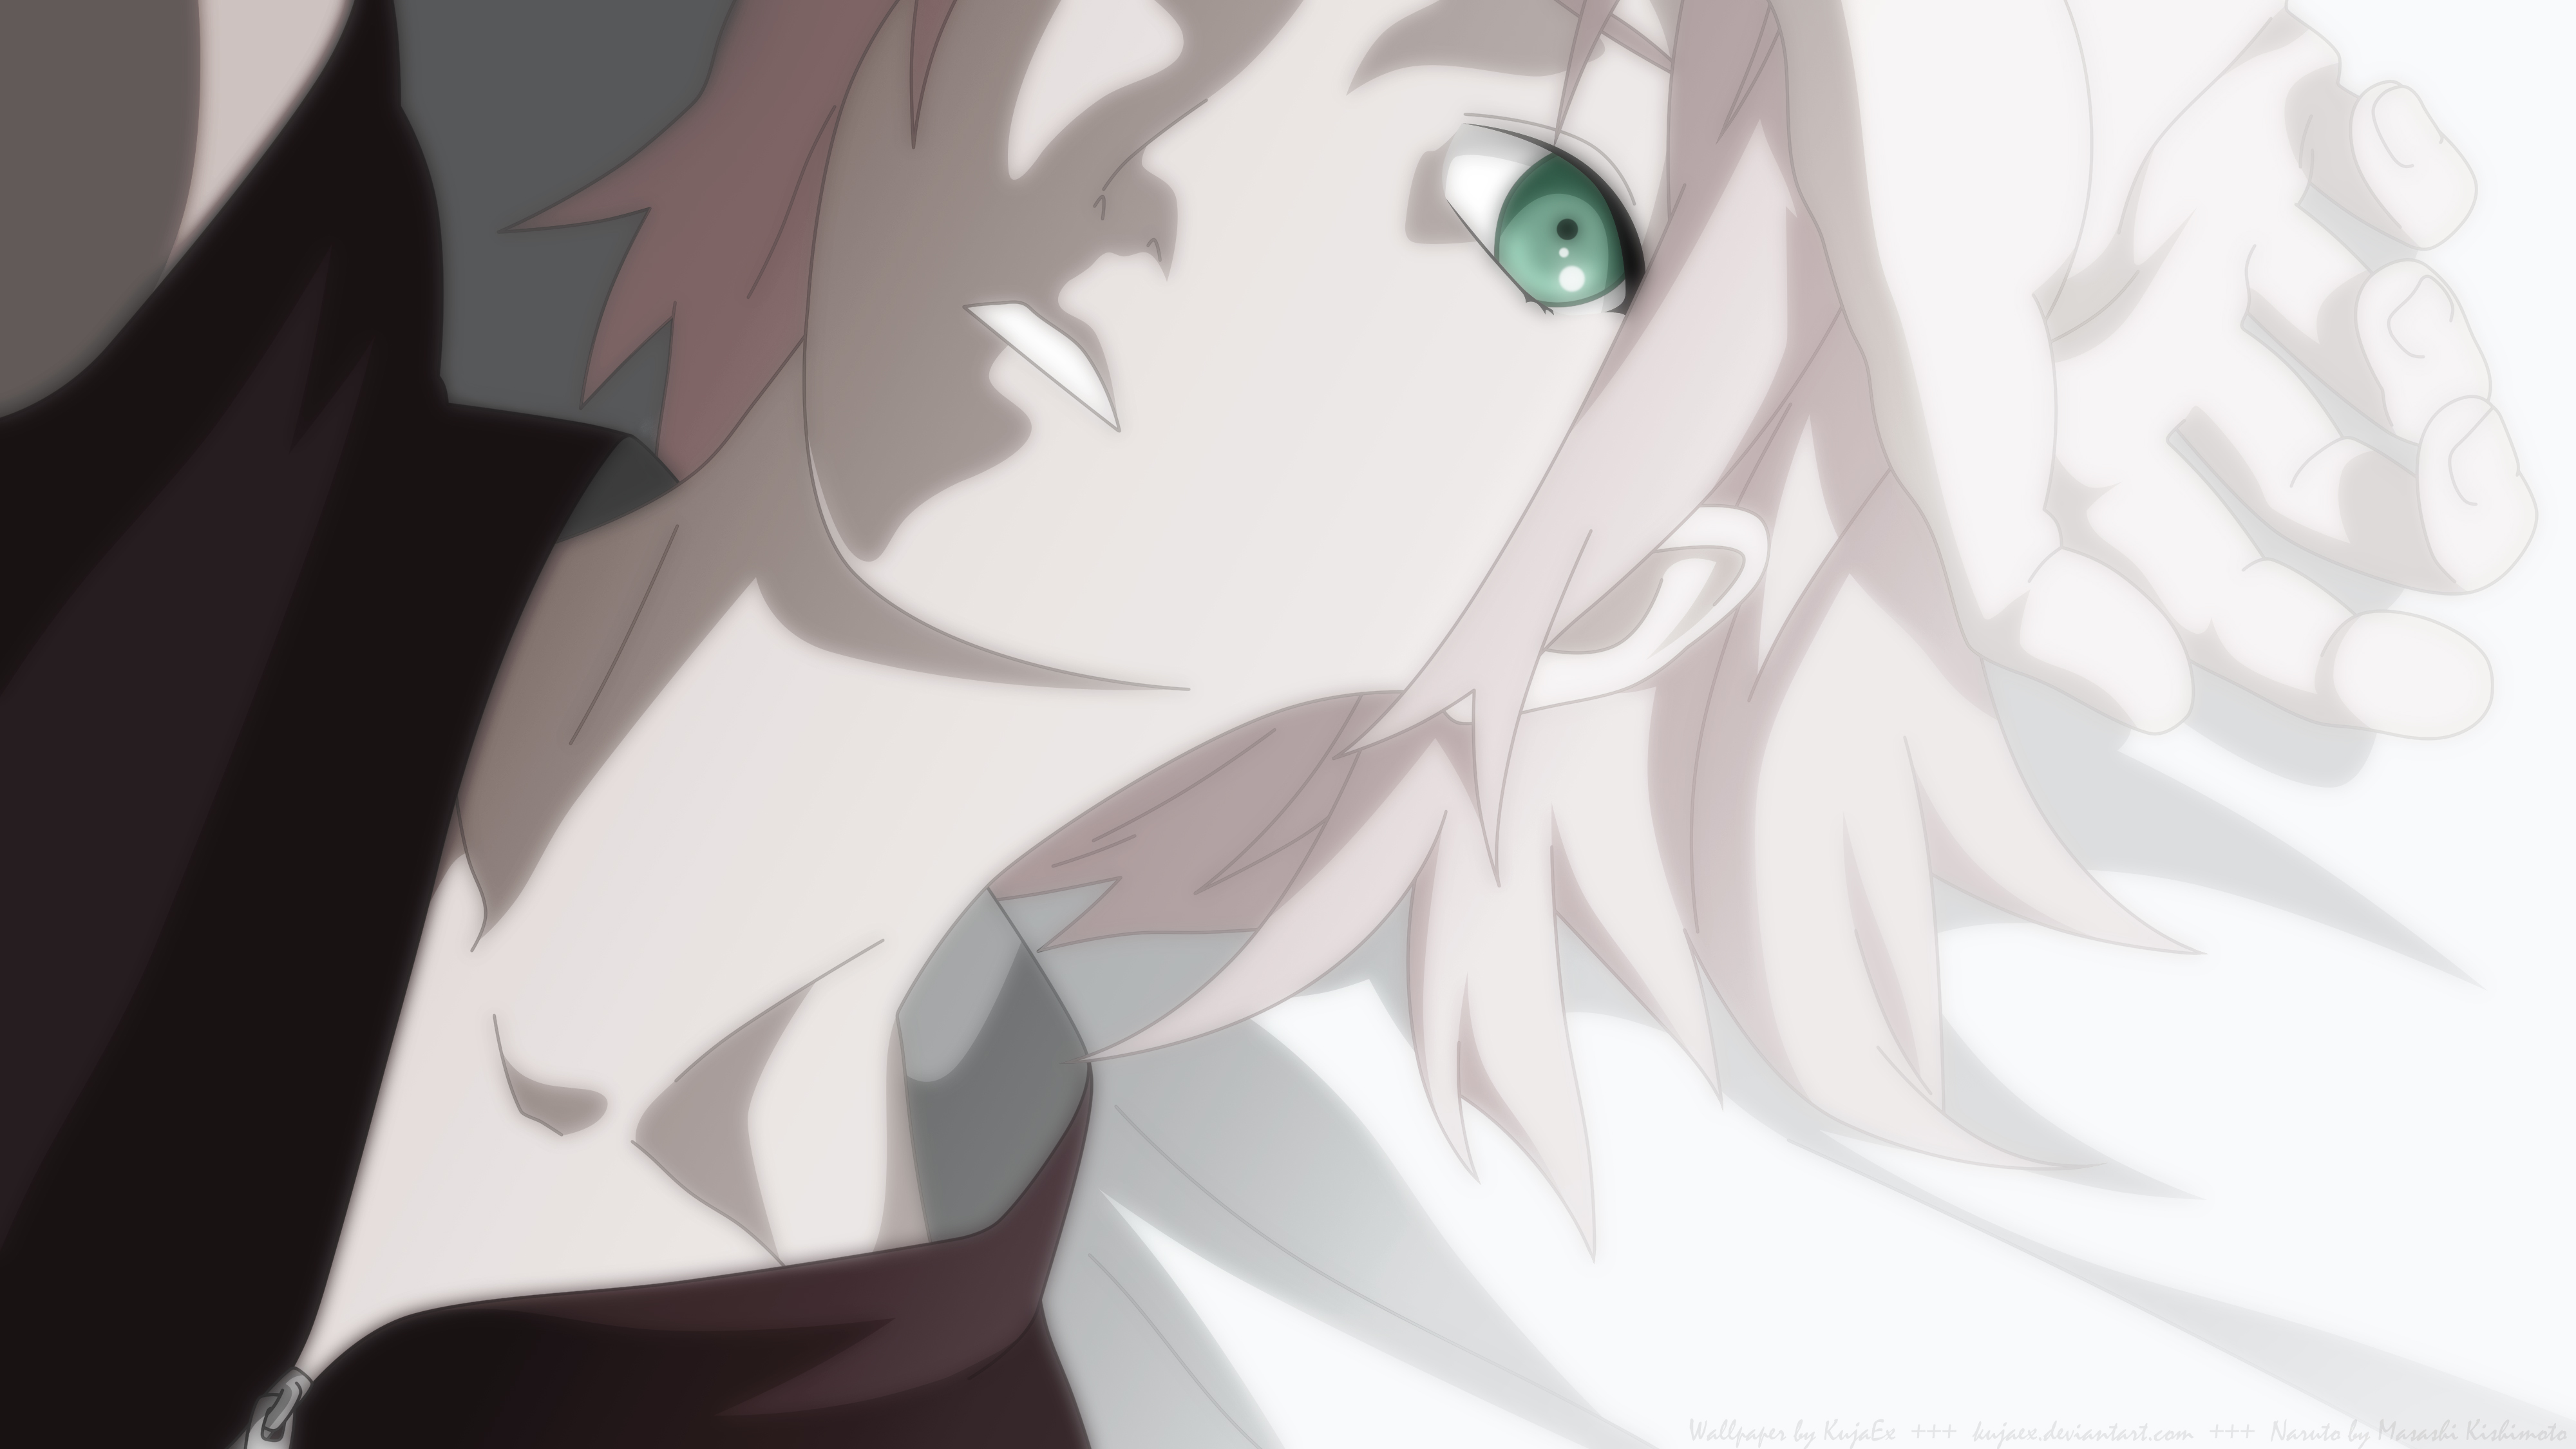 Descarga gratuita de fondo de pantalla para móvil de Sakura Haruno, Animado, Naruto.